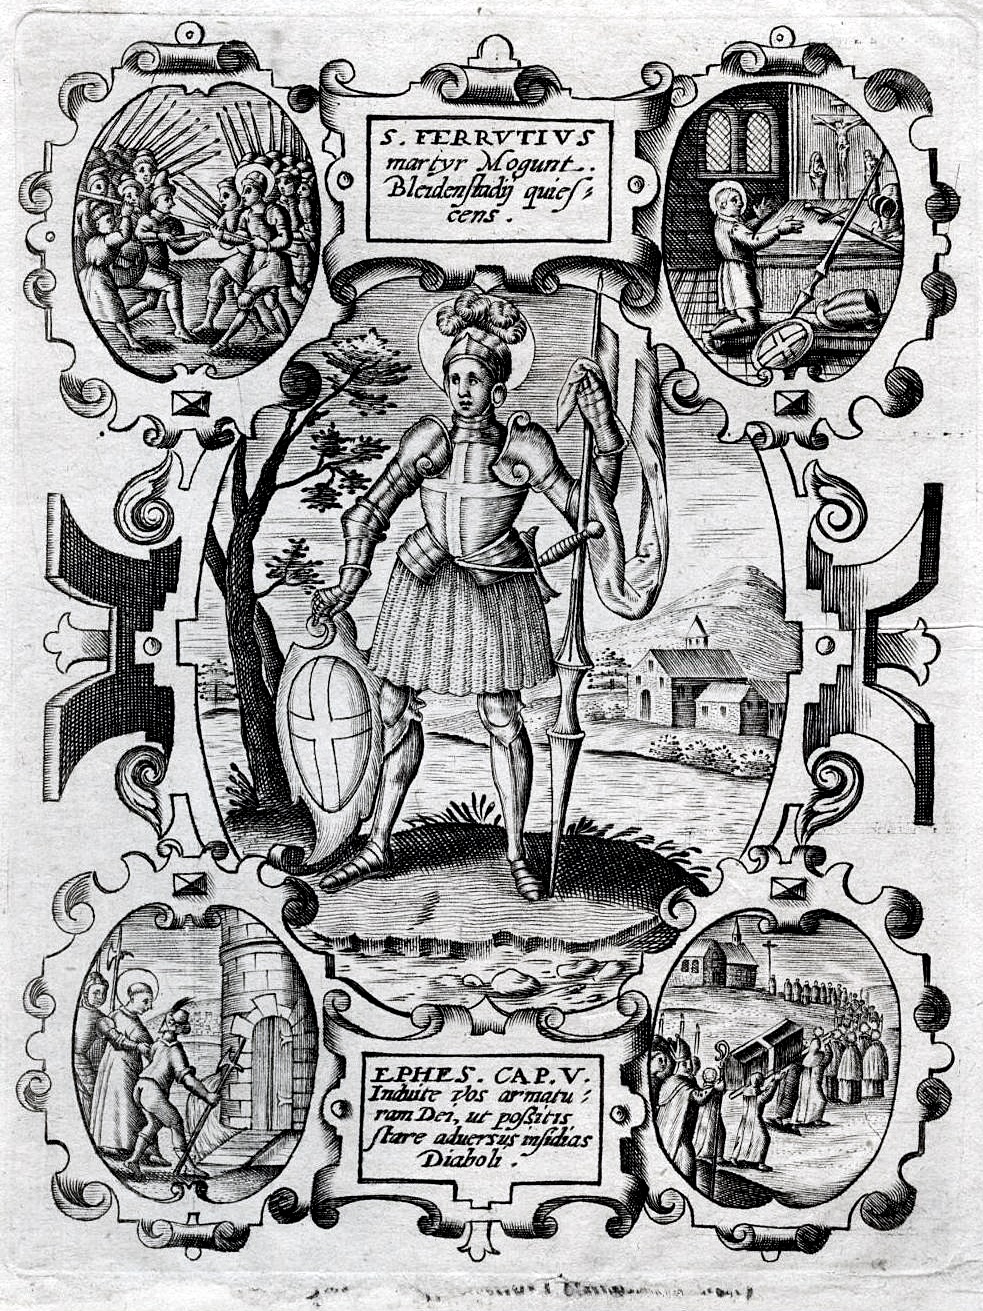 Stich von St. Ferrutius und seiner Vita, um 1700 (c) Von Stecher um 1650 - Ebayangebot, Gemeinfrei, https://commons.wikimedia.org/w/index.php?curid=56254862